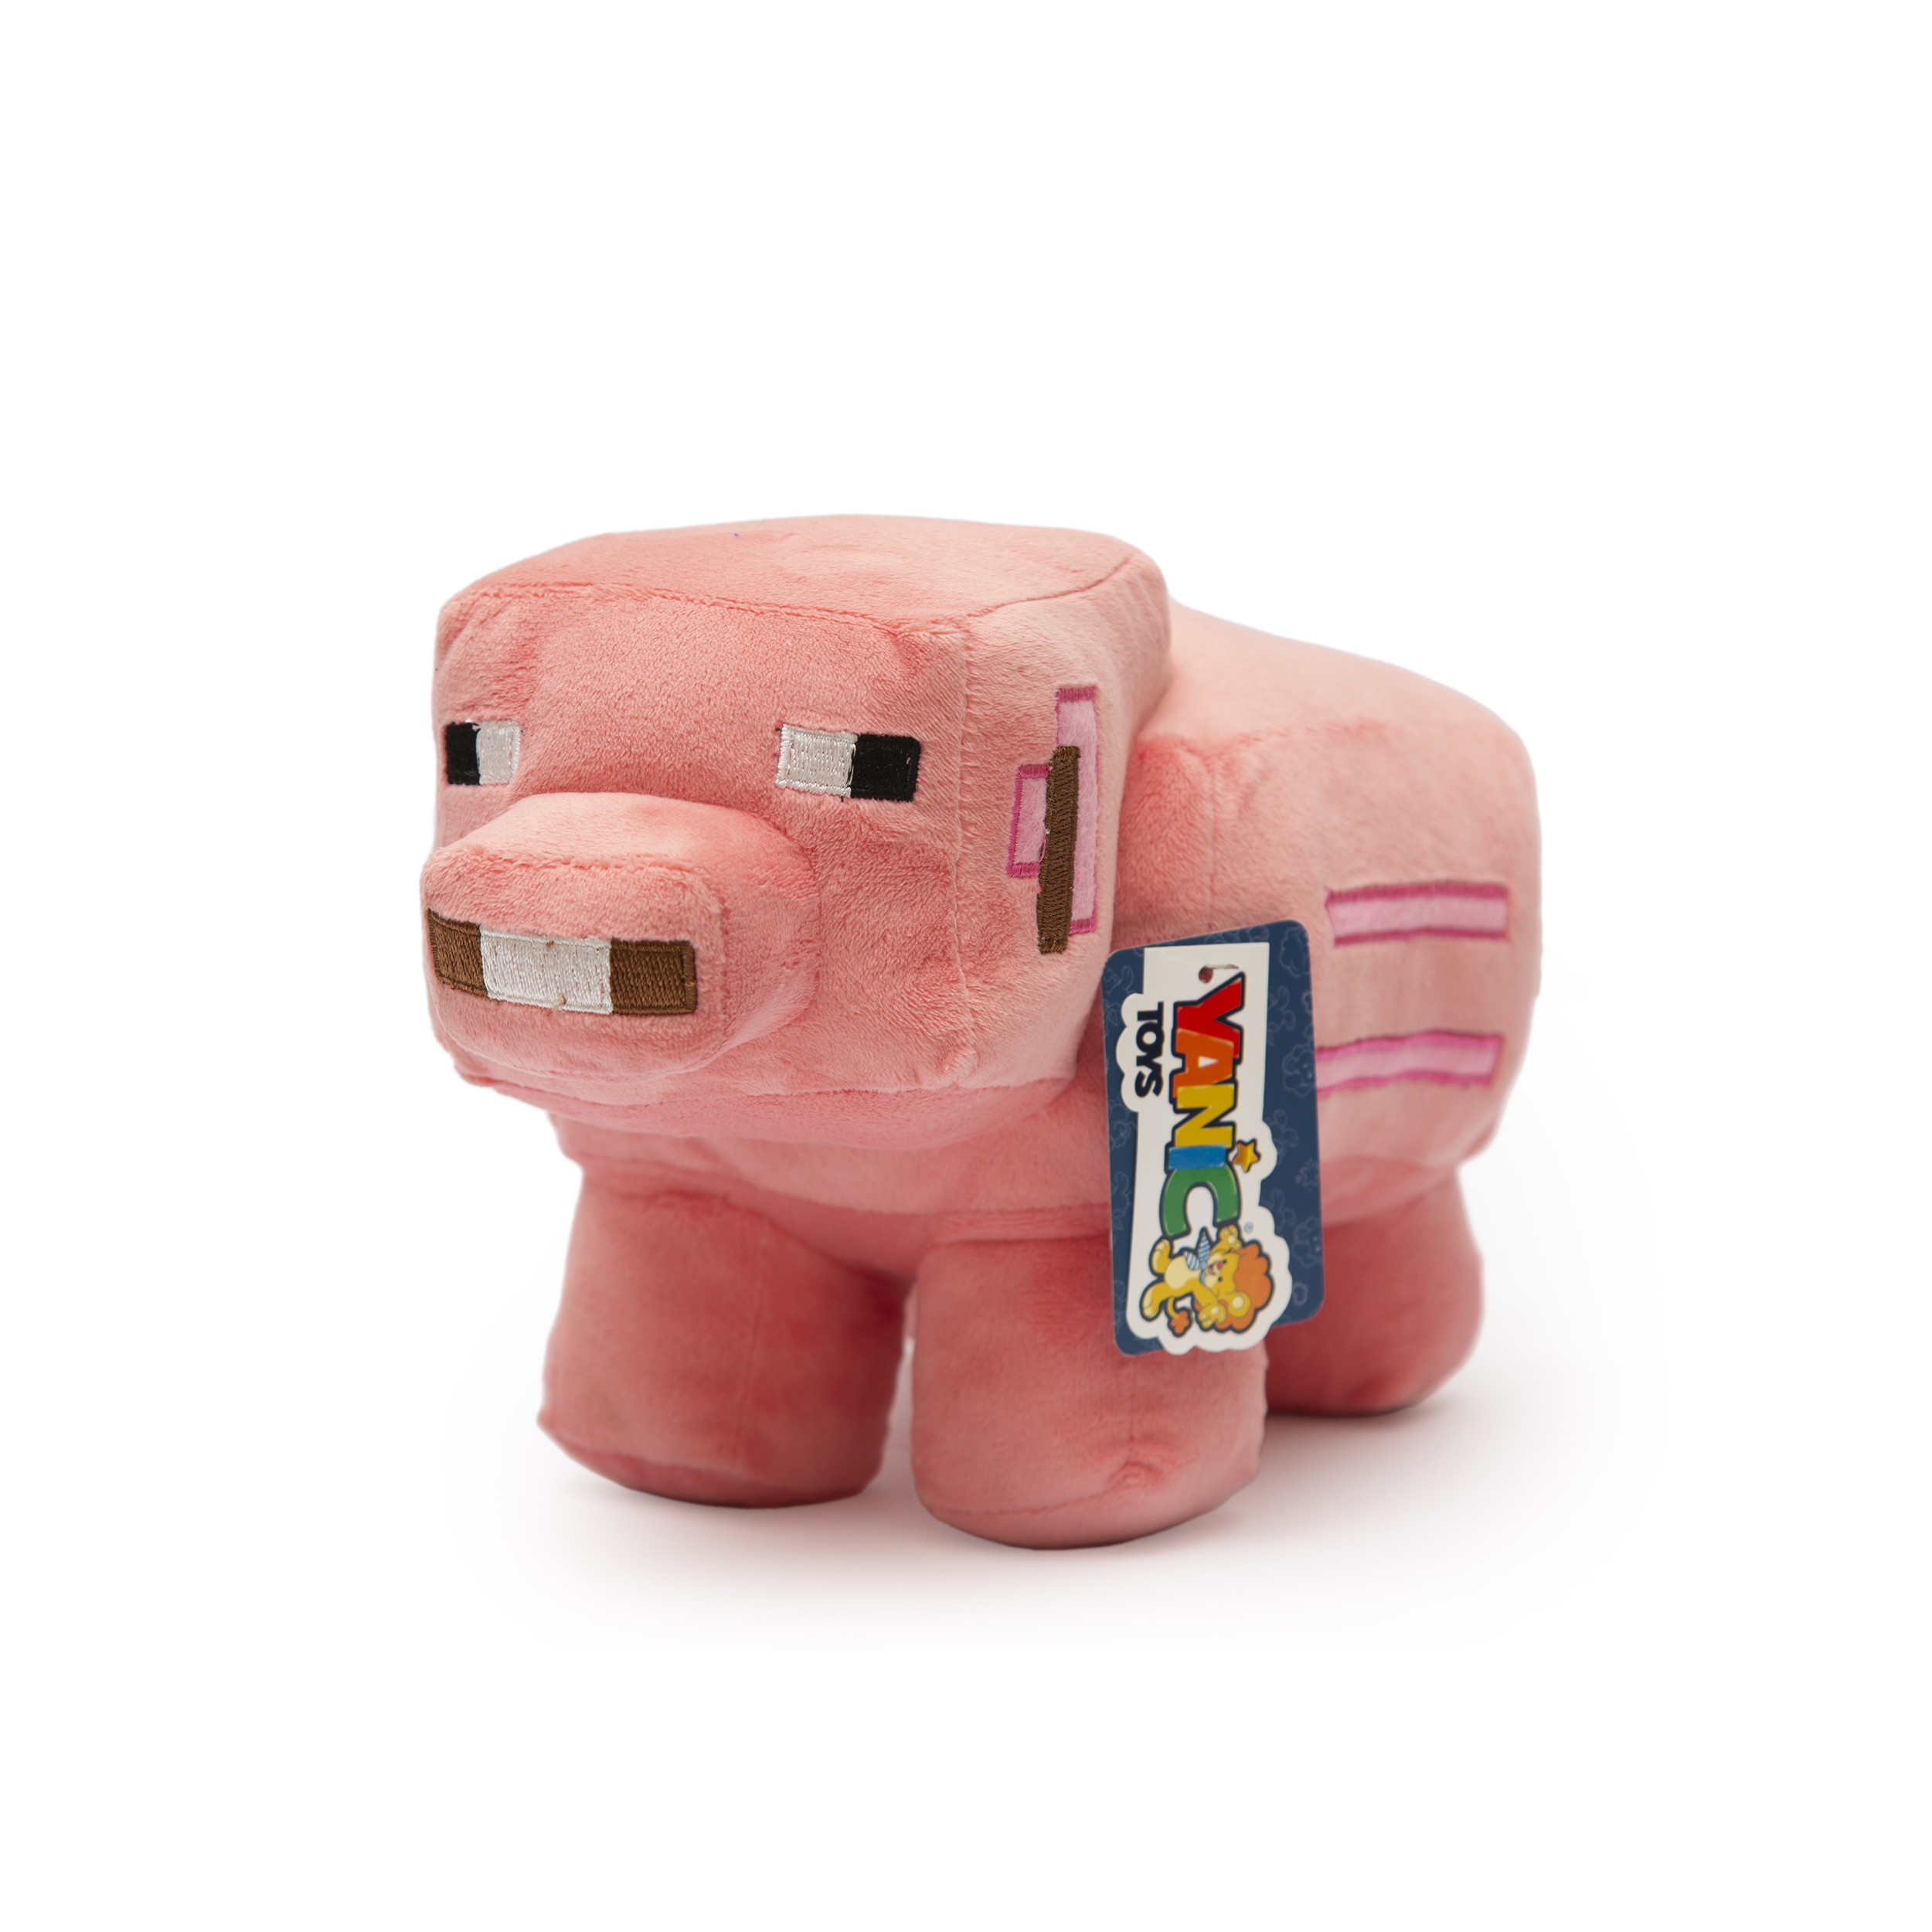 عروسک یانیک مدل شخصیت ماینکرافت خوک کد 100248 ارتفاع 14.5 سانتی متر